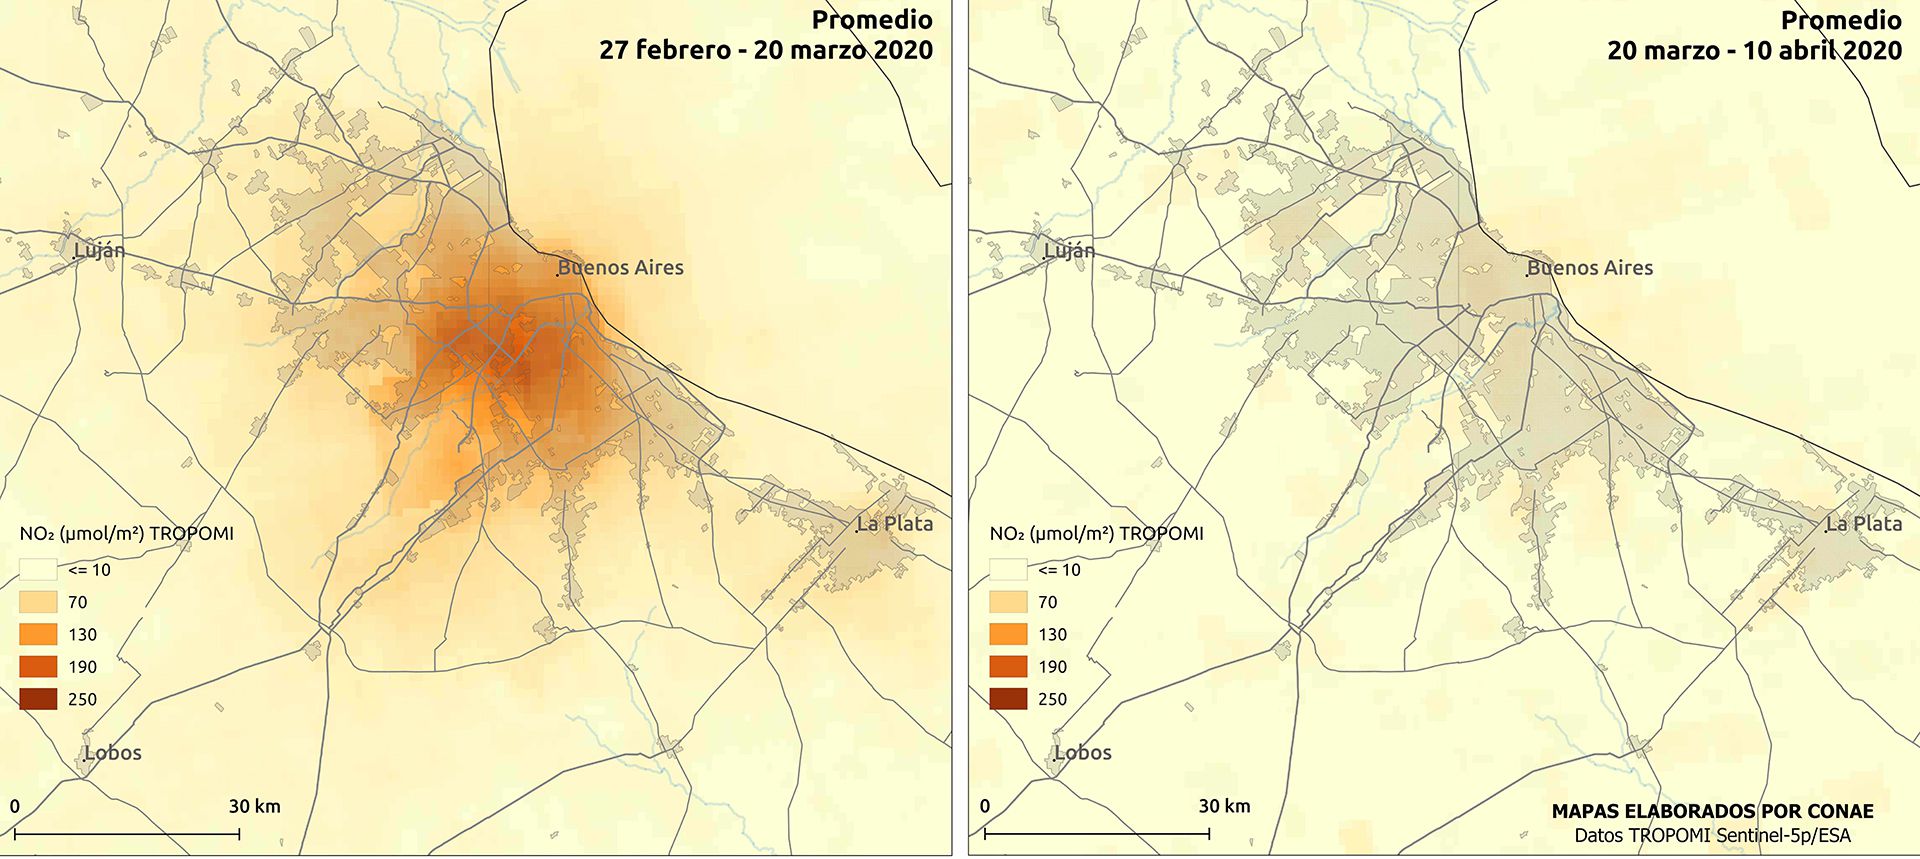 Mapa comparativo de NO2 en Buenos Aires, de febrero-marzo - marzo-abril (CONAE)